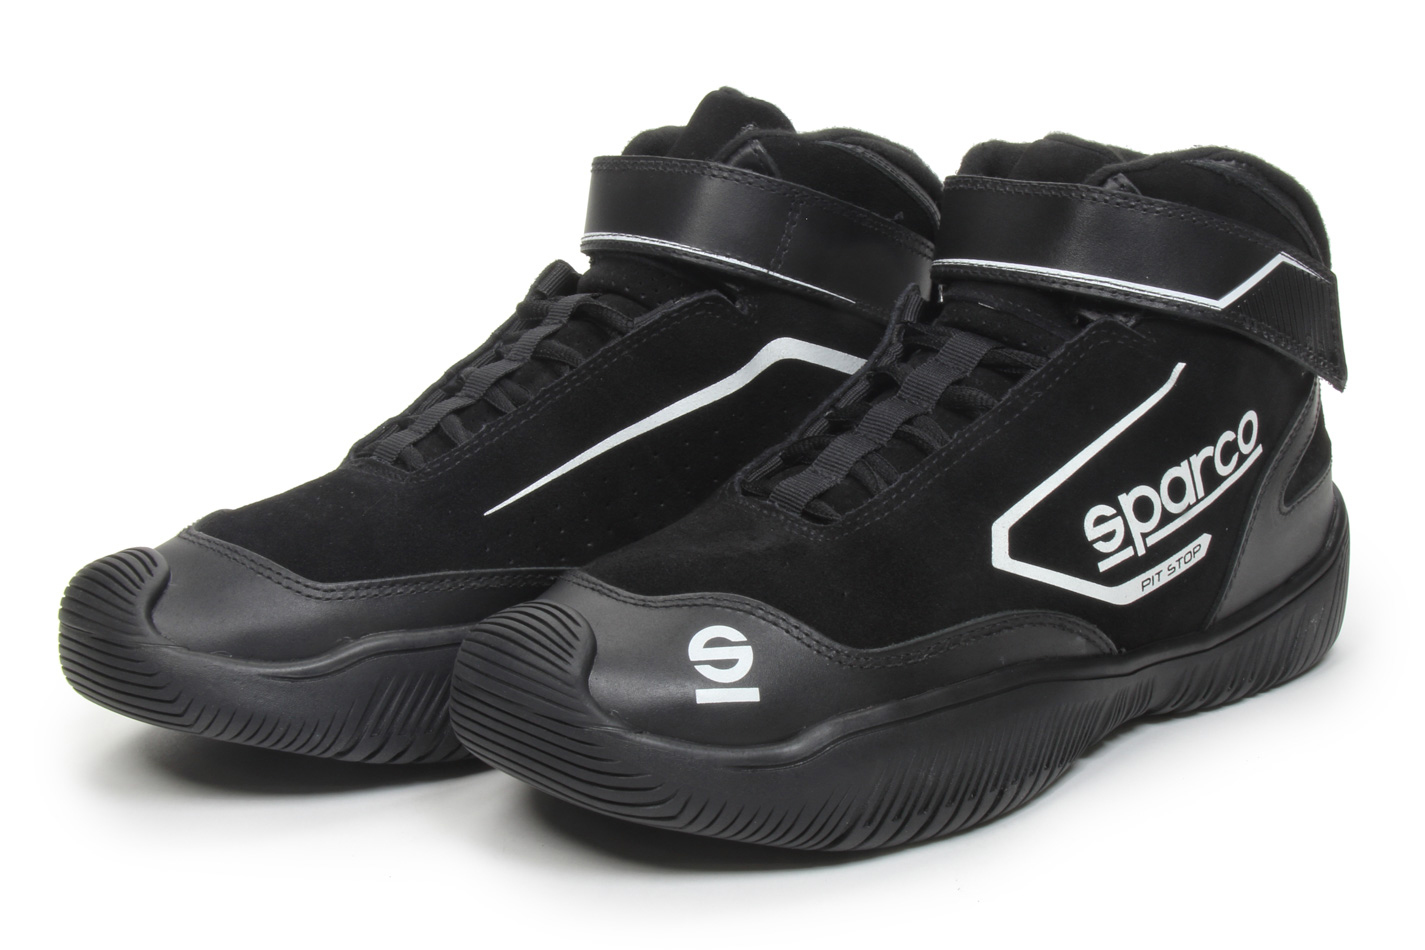 Shoe Pit Stop 2 Size 9.5 Black - 0012PS2095NR